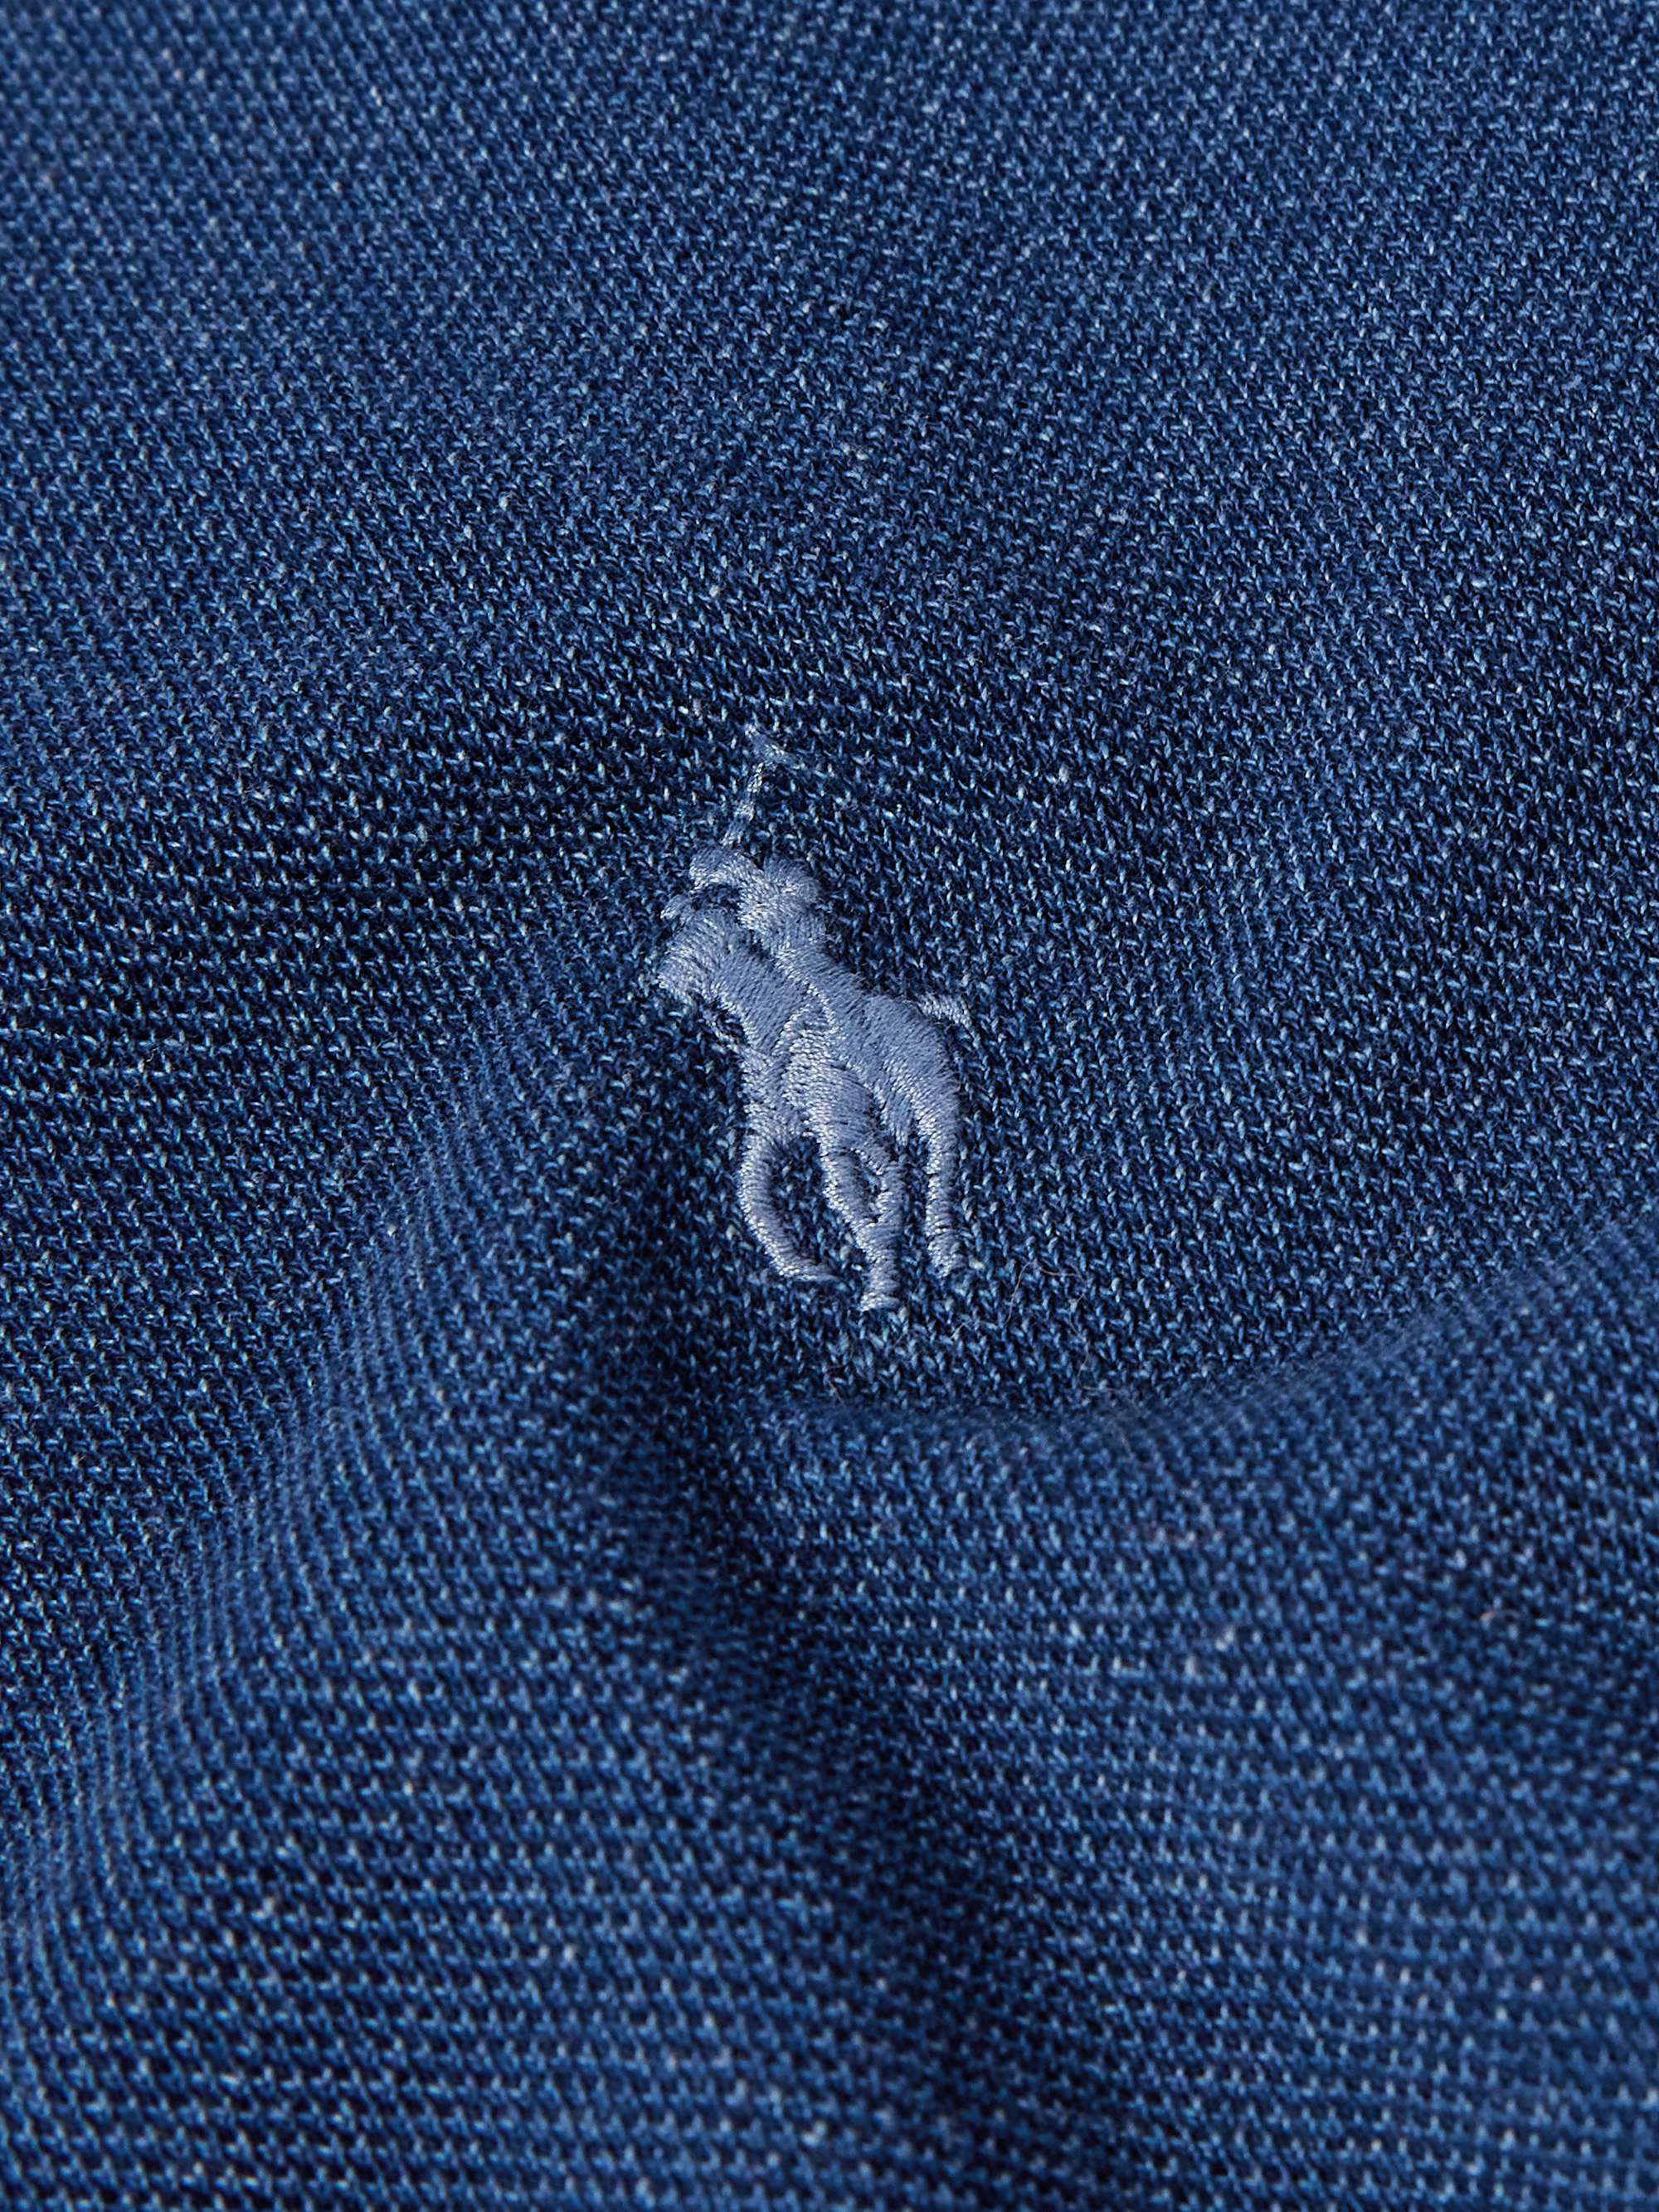 POLO RALPH LAUREN Logo-Embroidered Cotton-Piqué Polo-Shirt for Men | MR ...